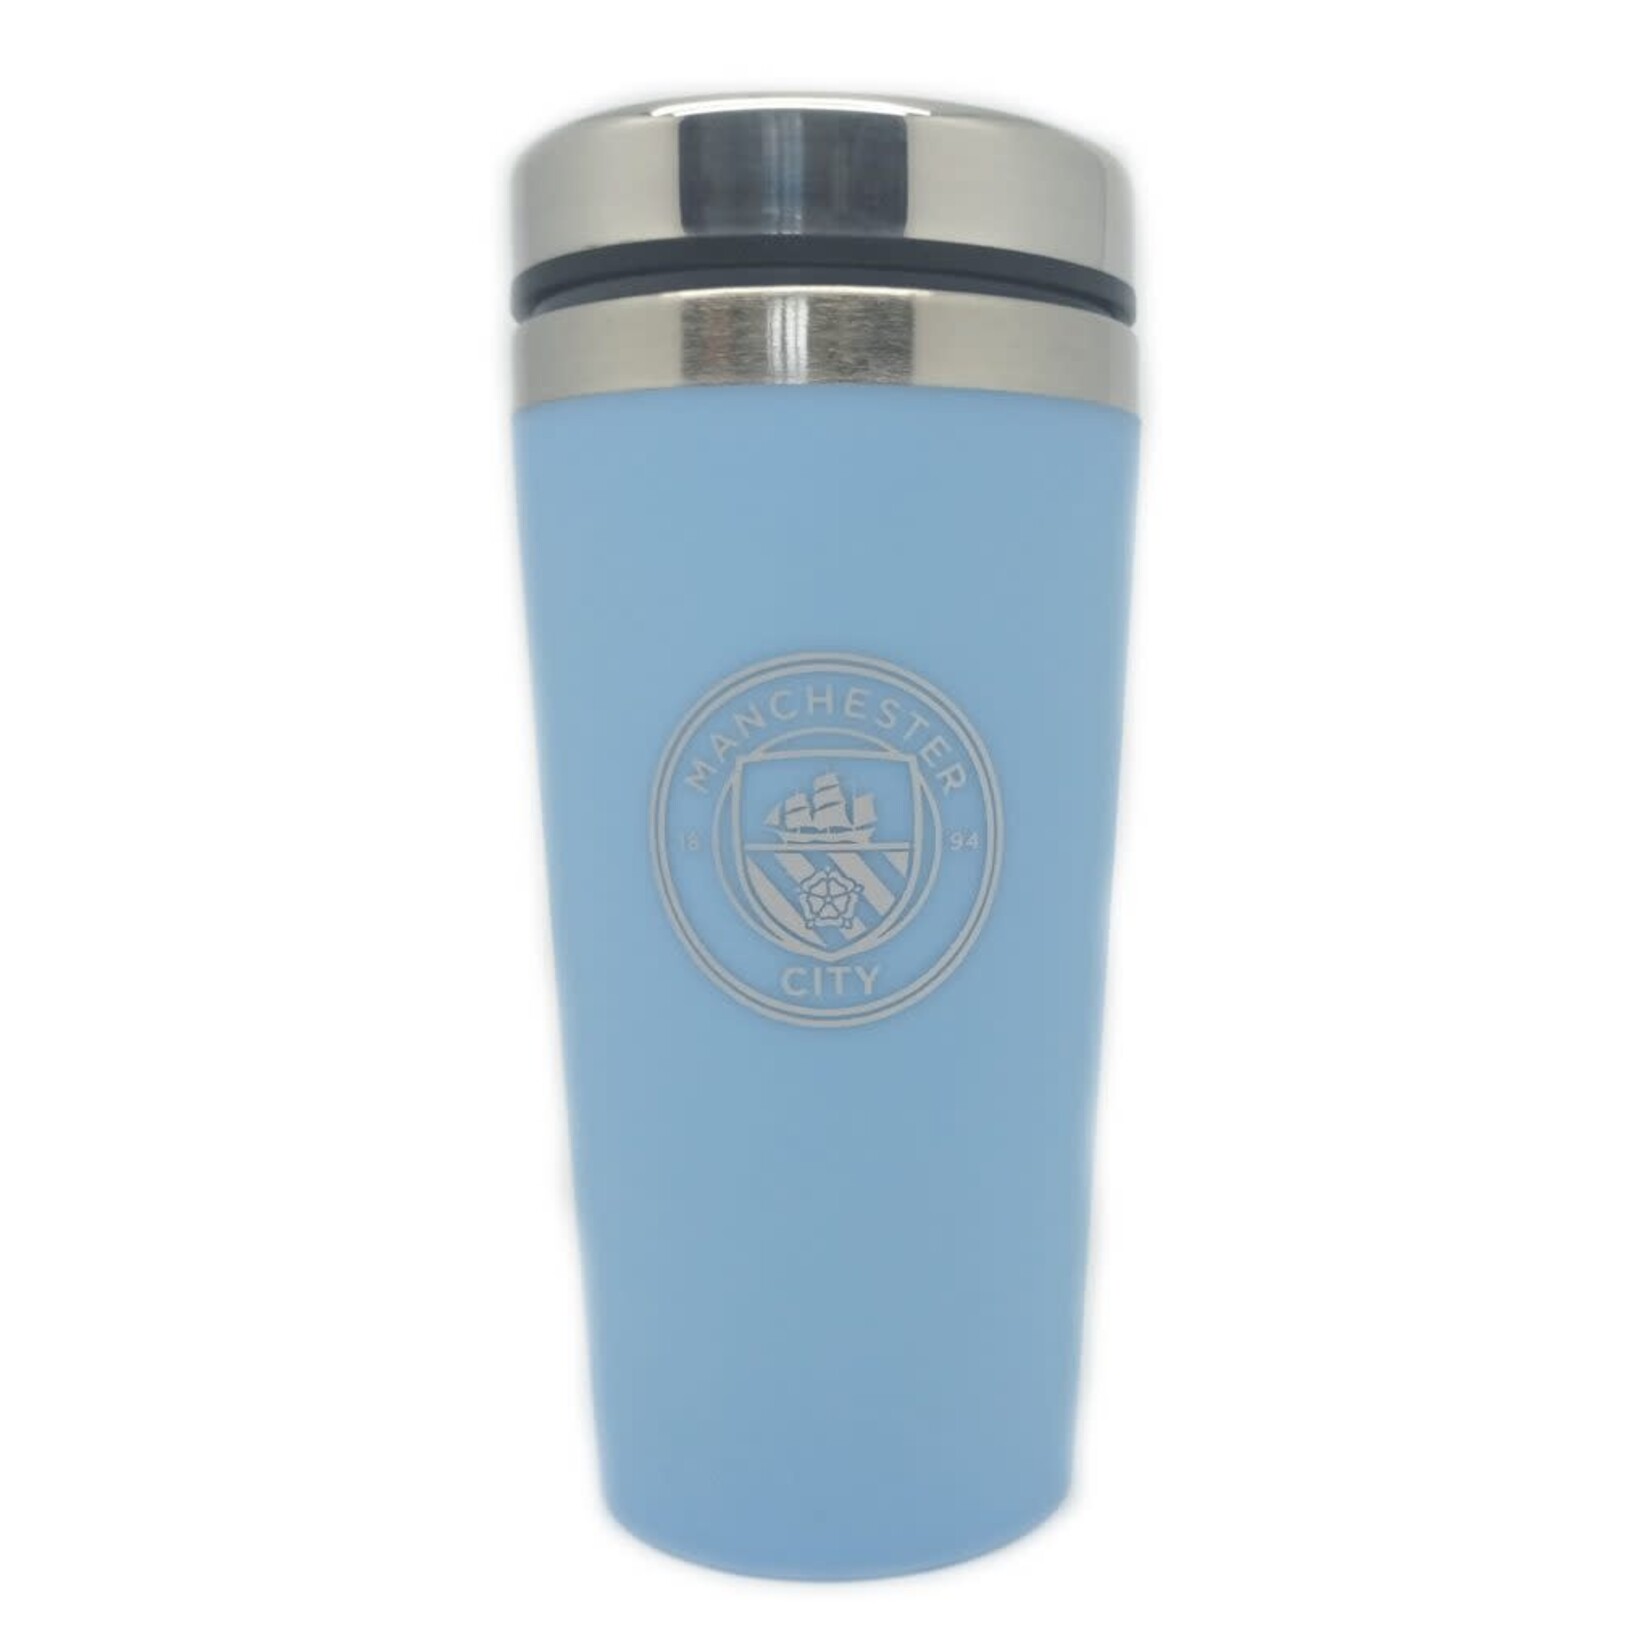 Manchester City Executive Travel Mug (Blue)